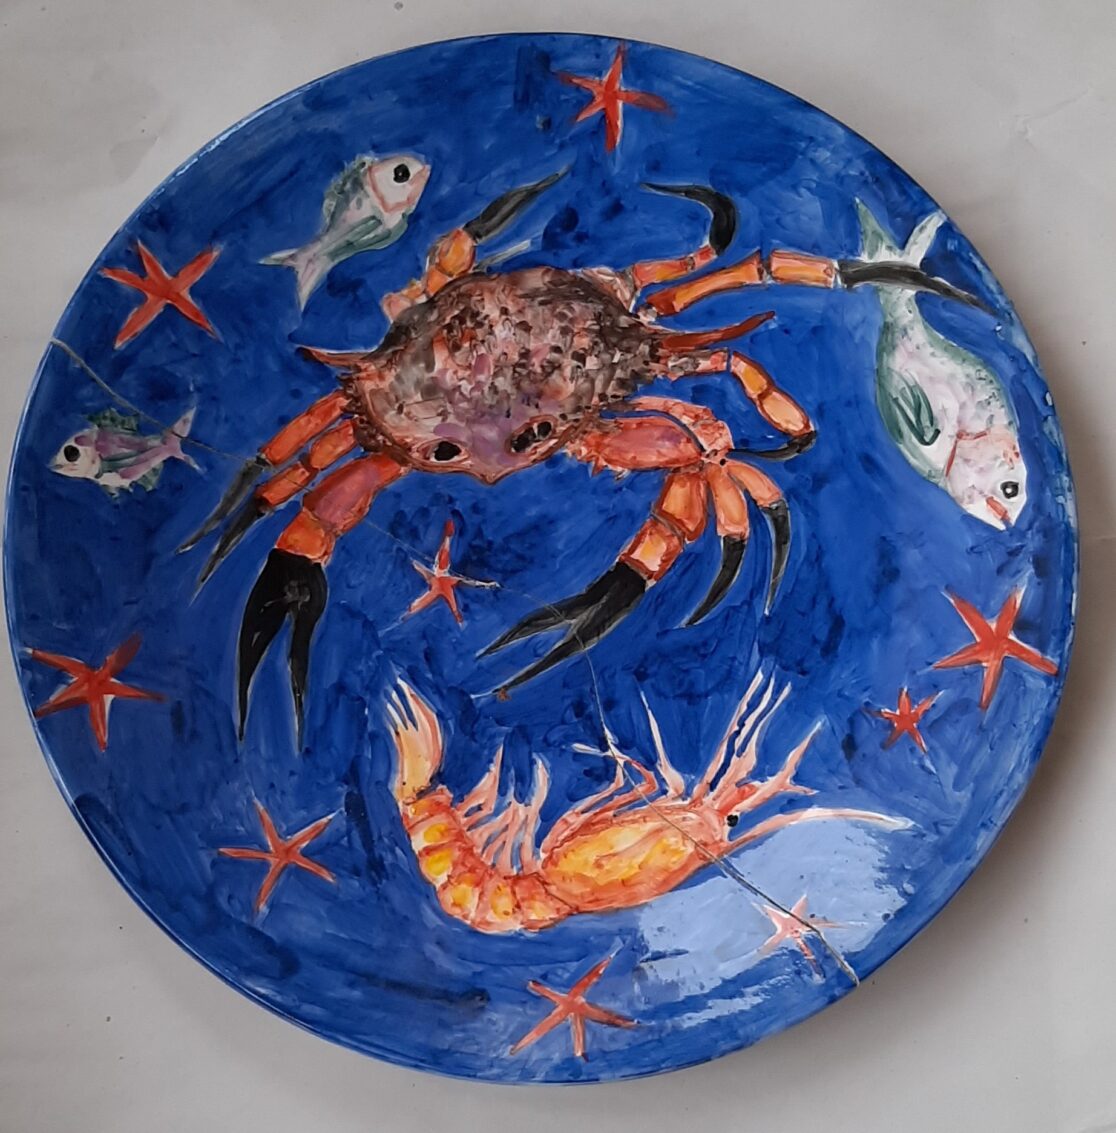 Ειρήνη Ηλιοπούλου | Irini Iliopoulou, Θαλασσινά | Sea food, 2020